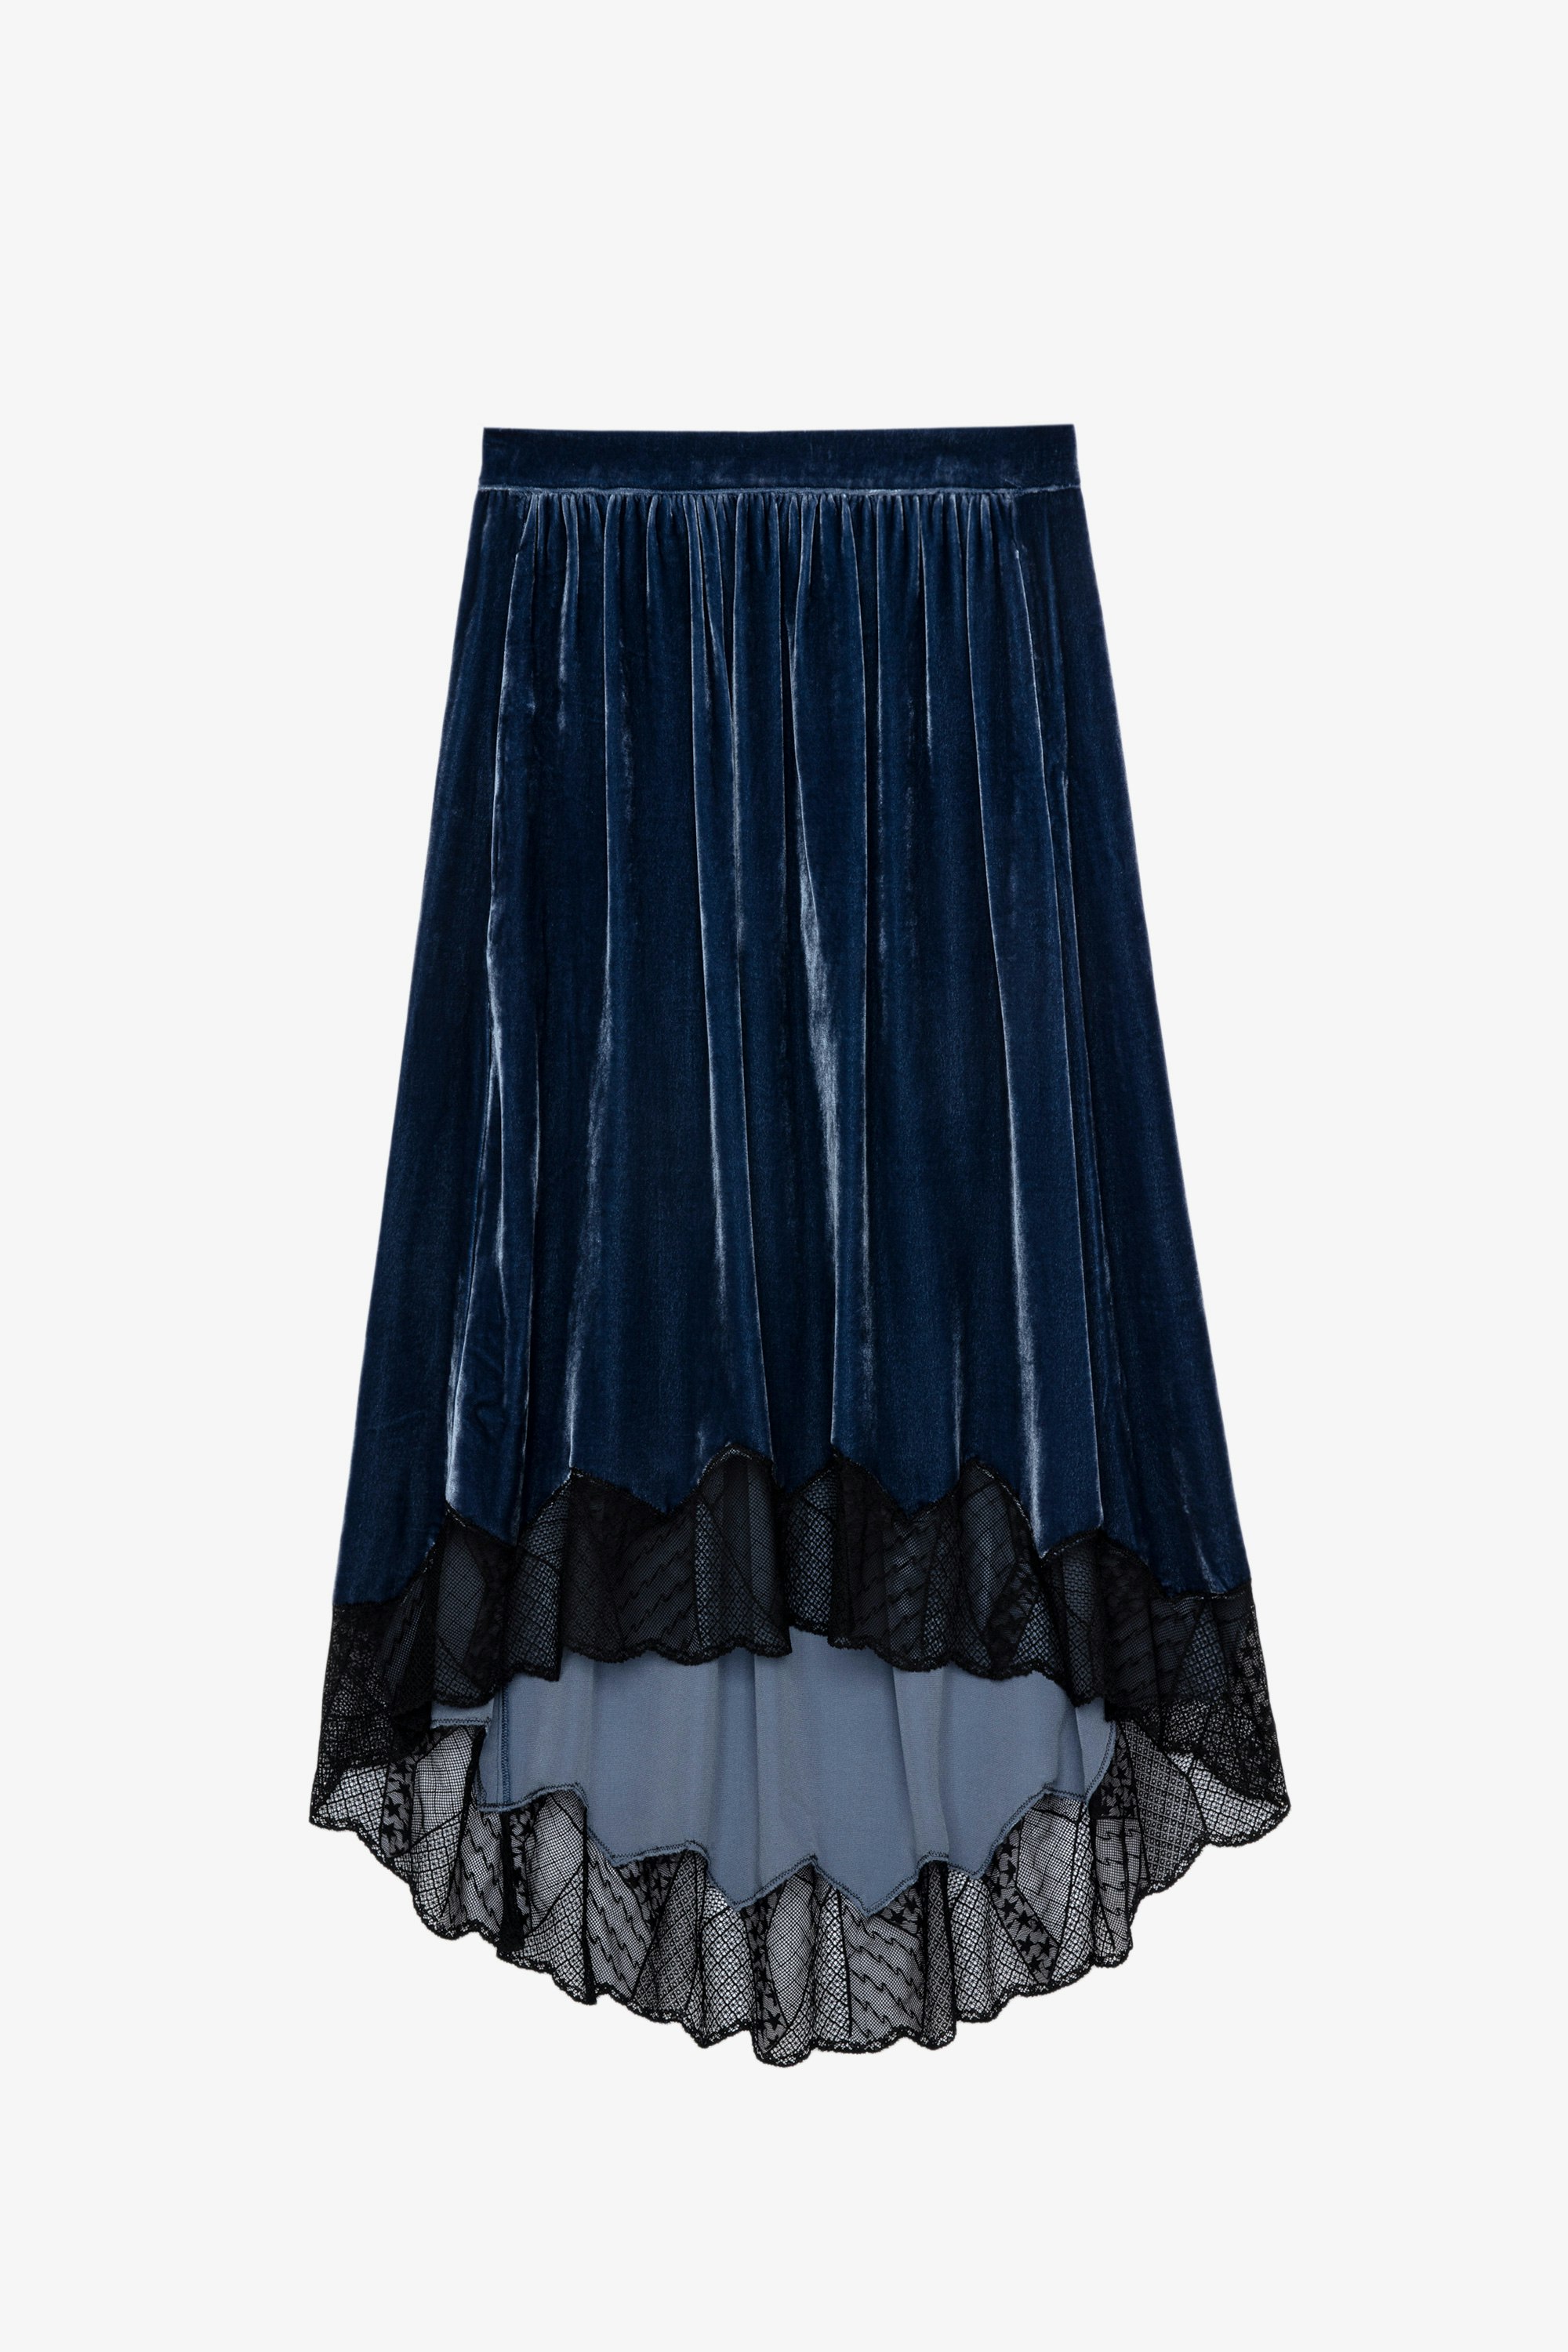 Joslin Velvet Skirt Women’s blue velvet skirt with lace trim 